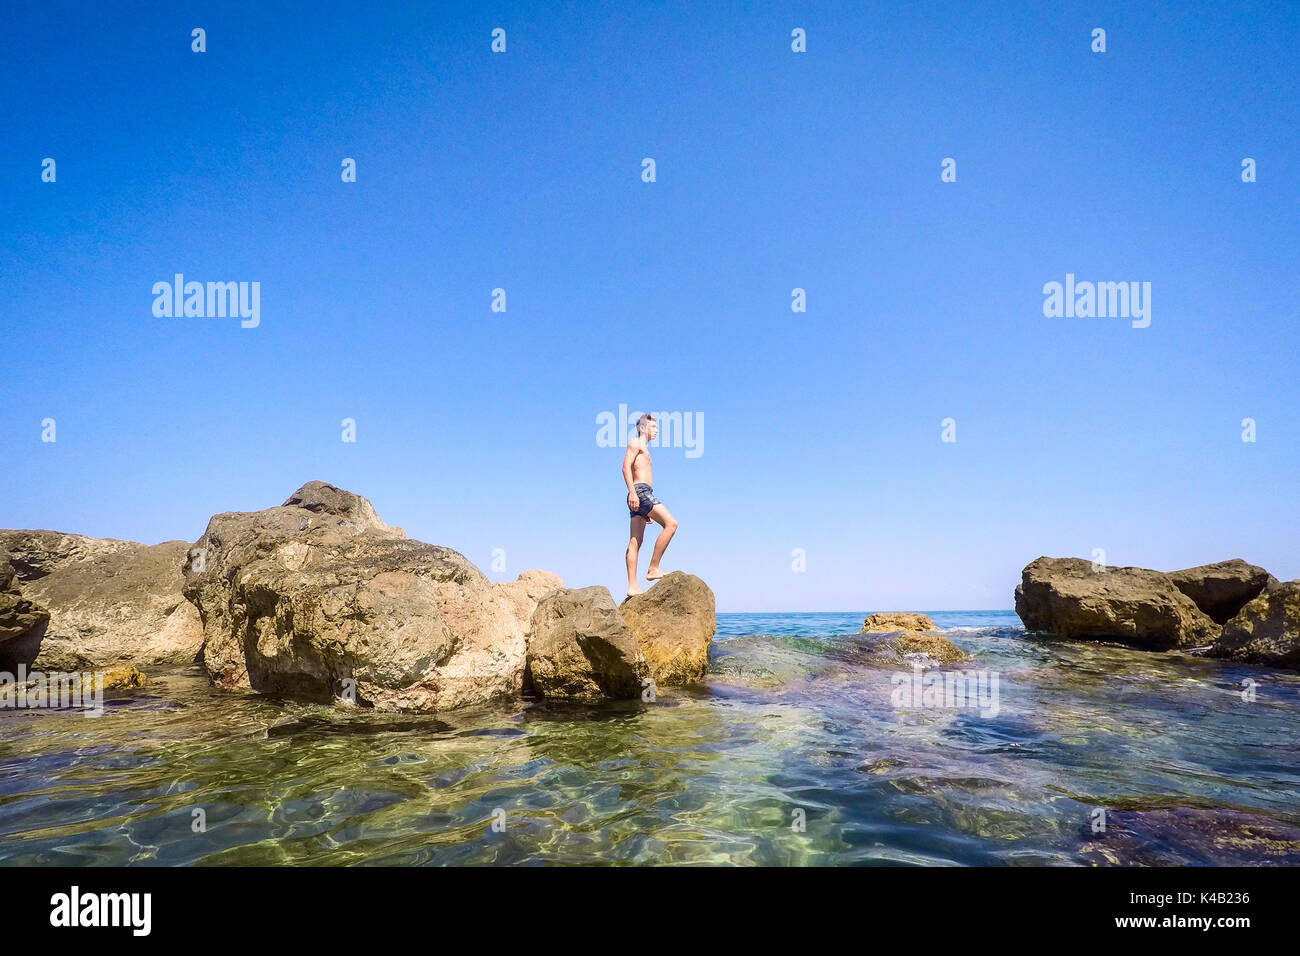 Adolescente in piedi sulle rocce al mare - estate - Sicilia mare mediterraneo Foto Stock